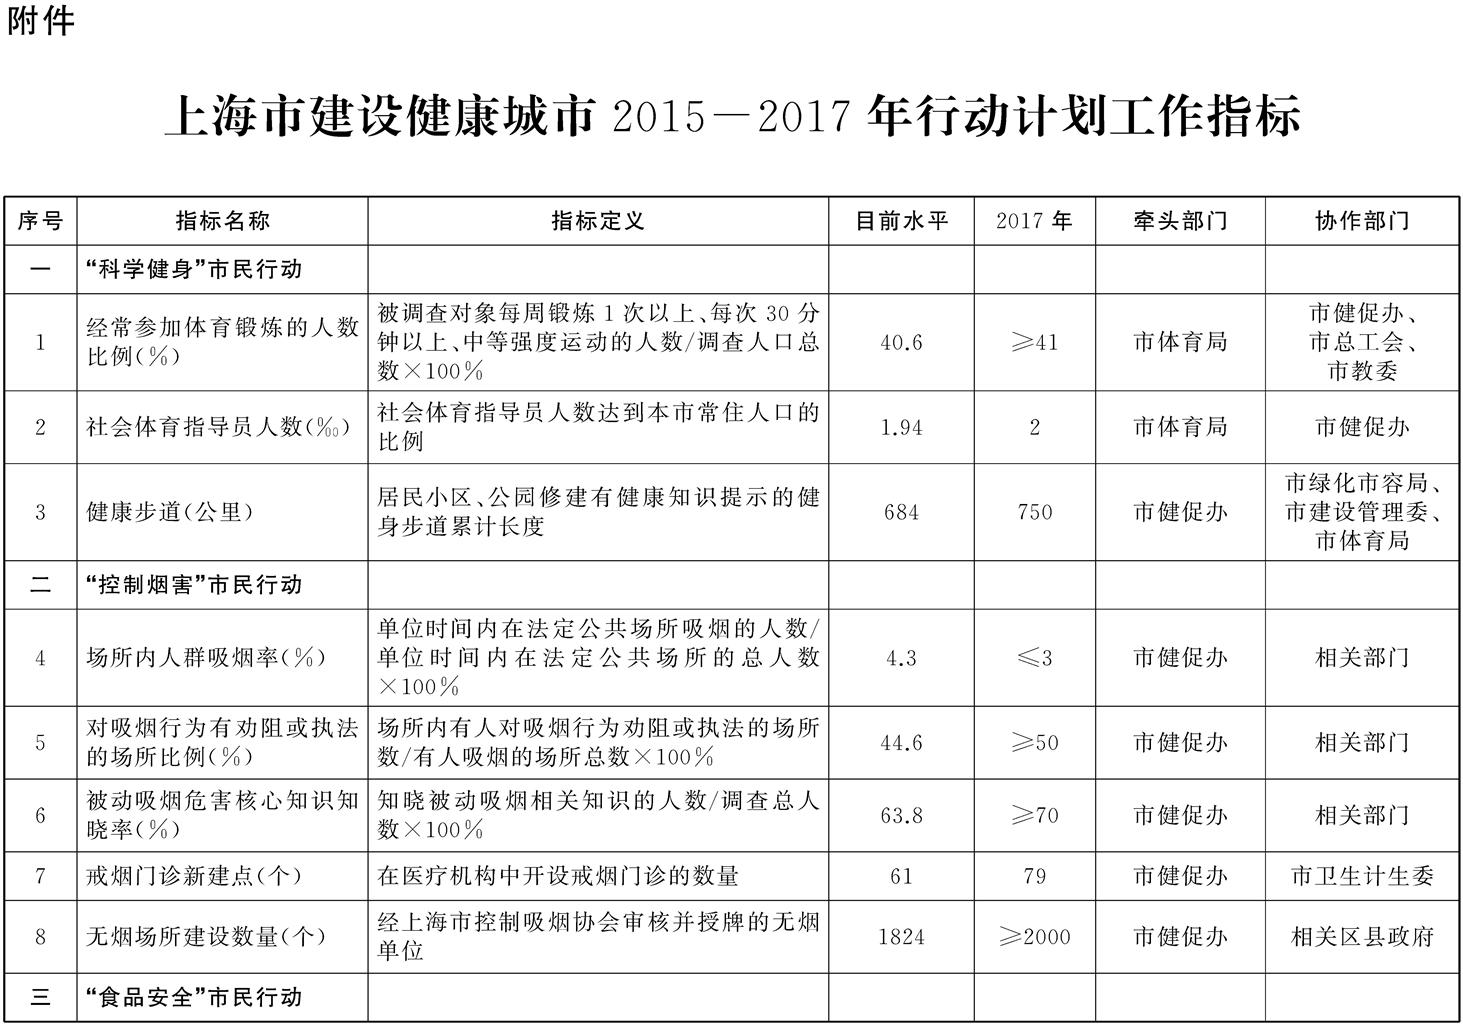 上海市建设健康城市2015——2017年行动计划工作指标